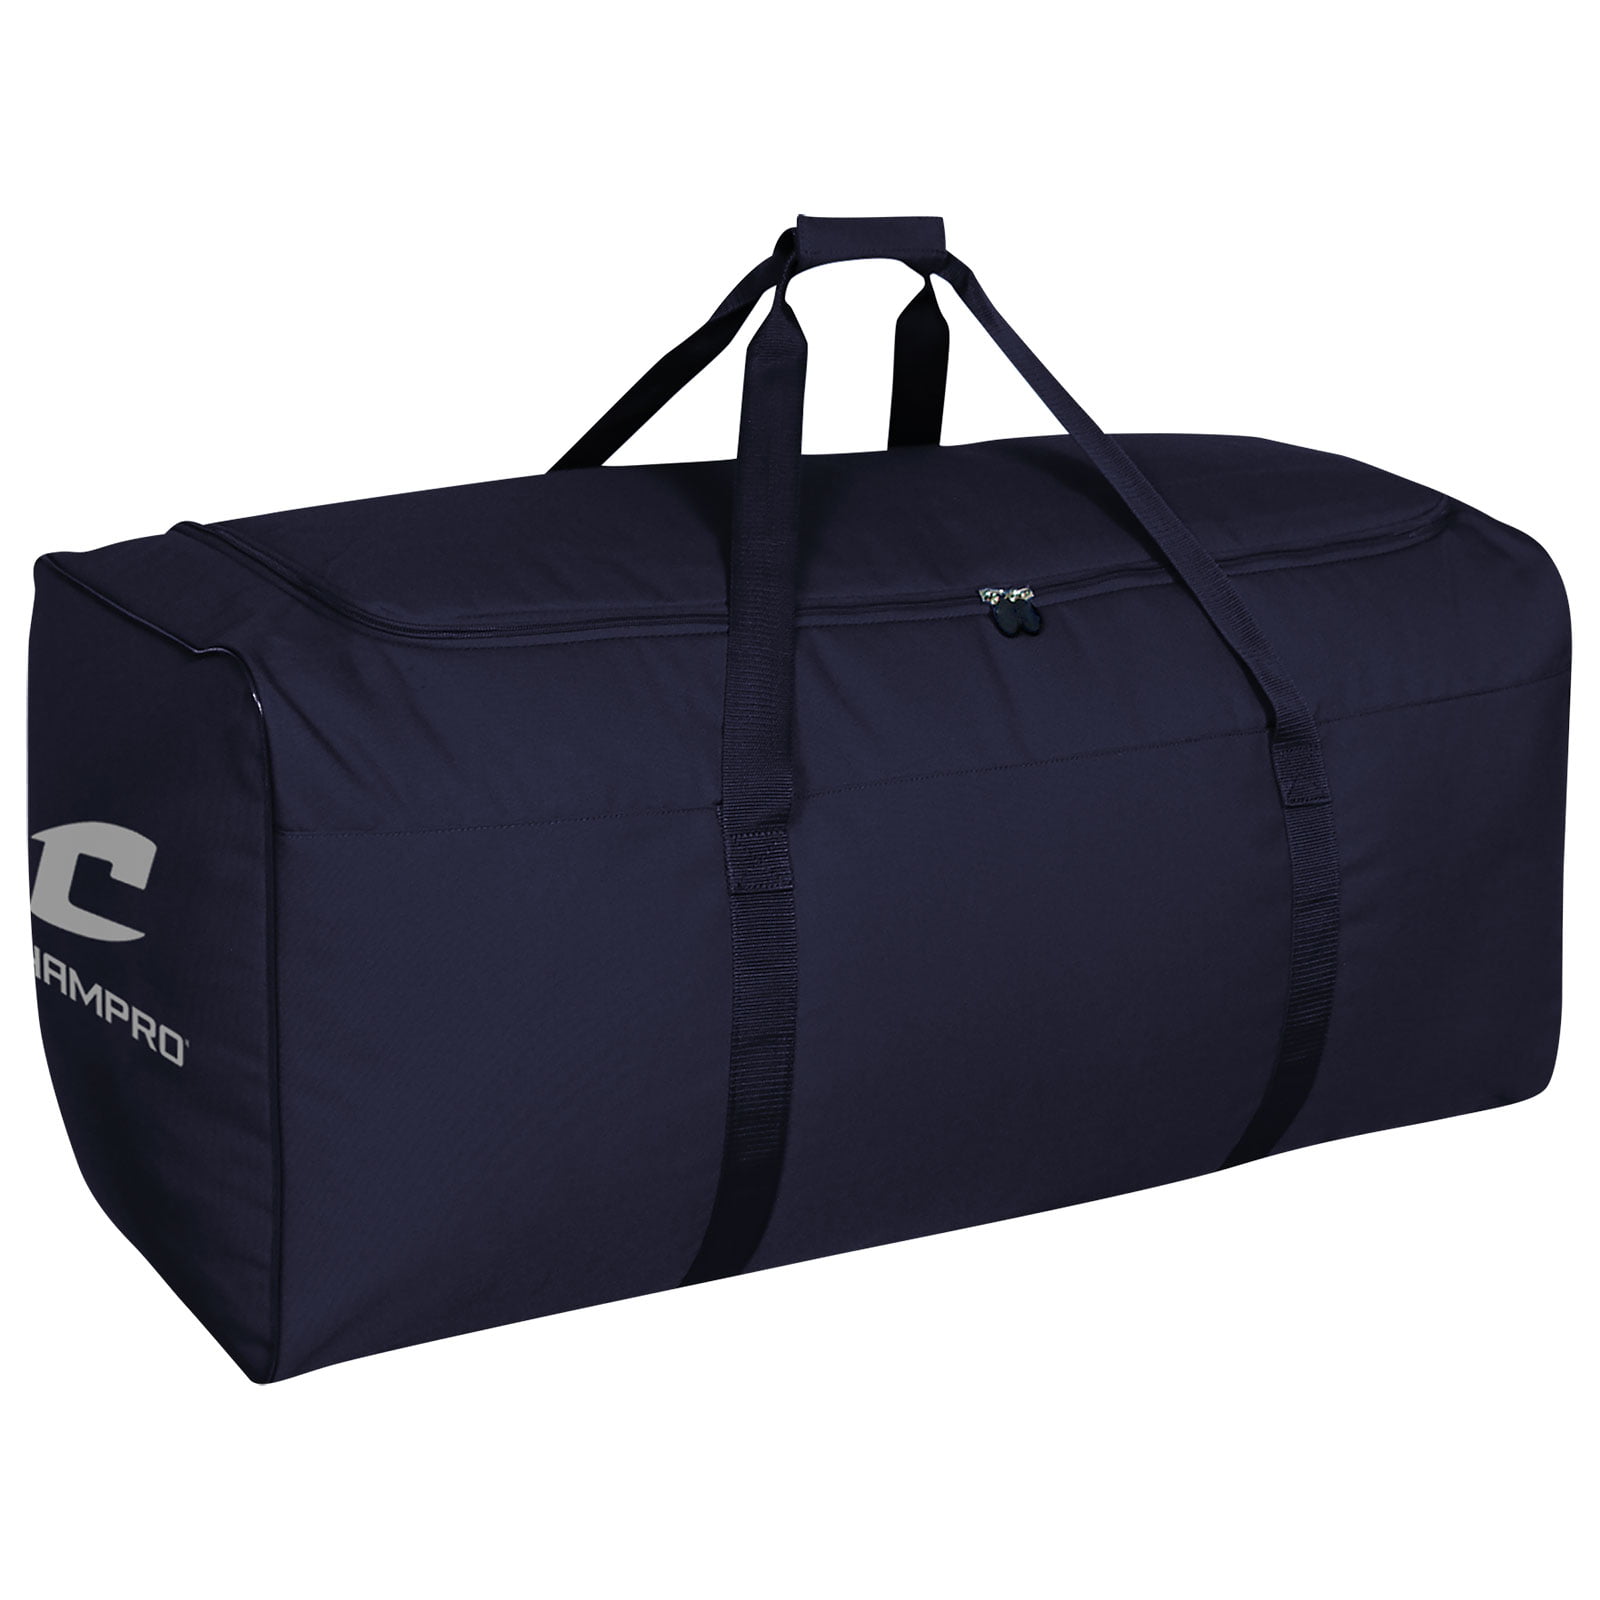 Champro Oversized Allpurpose Bag 11S 